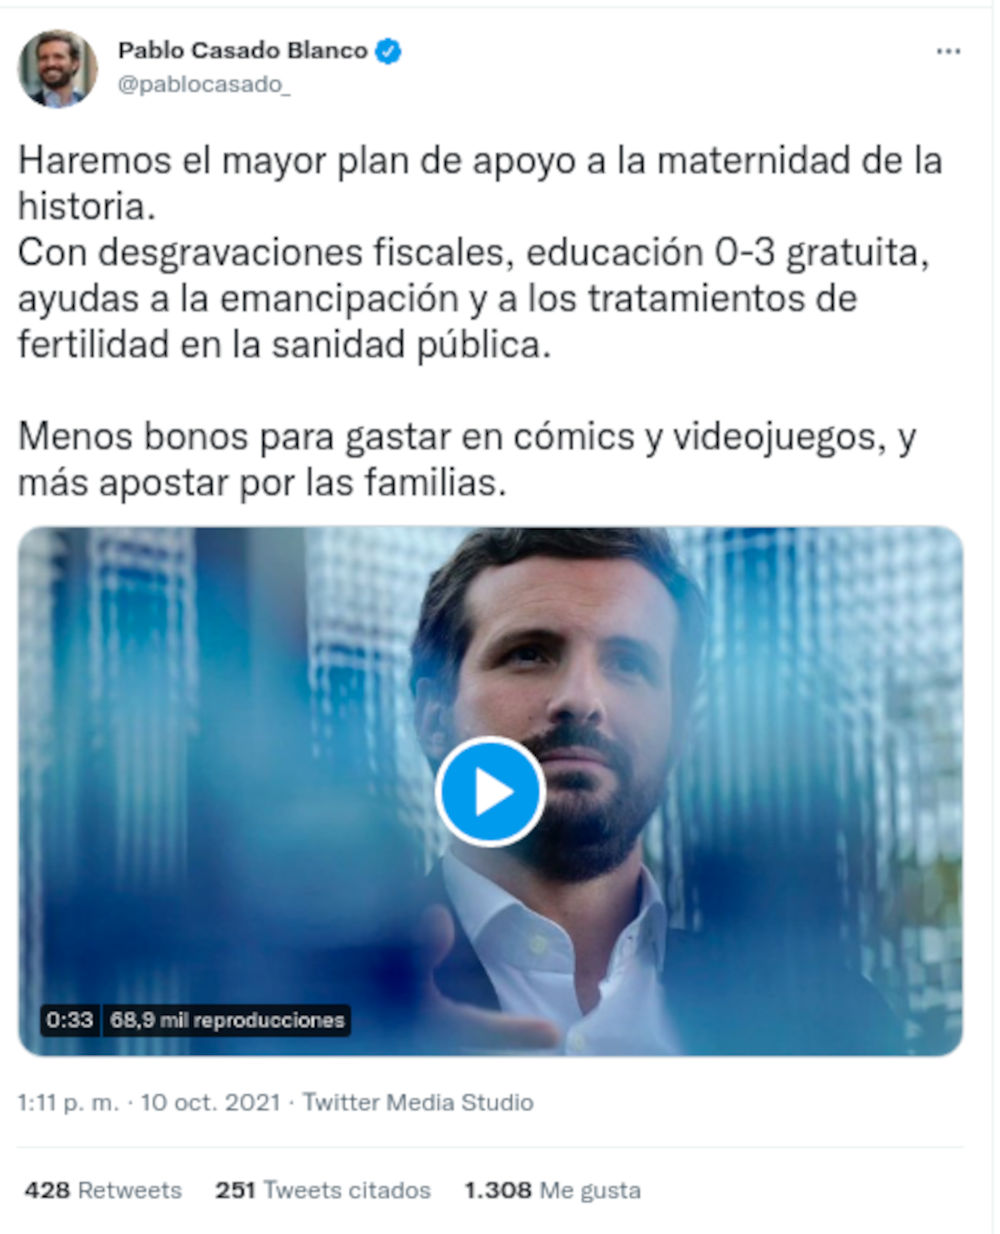 Político español ataca videojuegos y cómics por el bono cultural